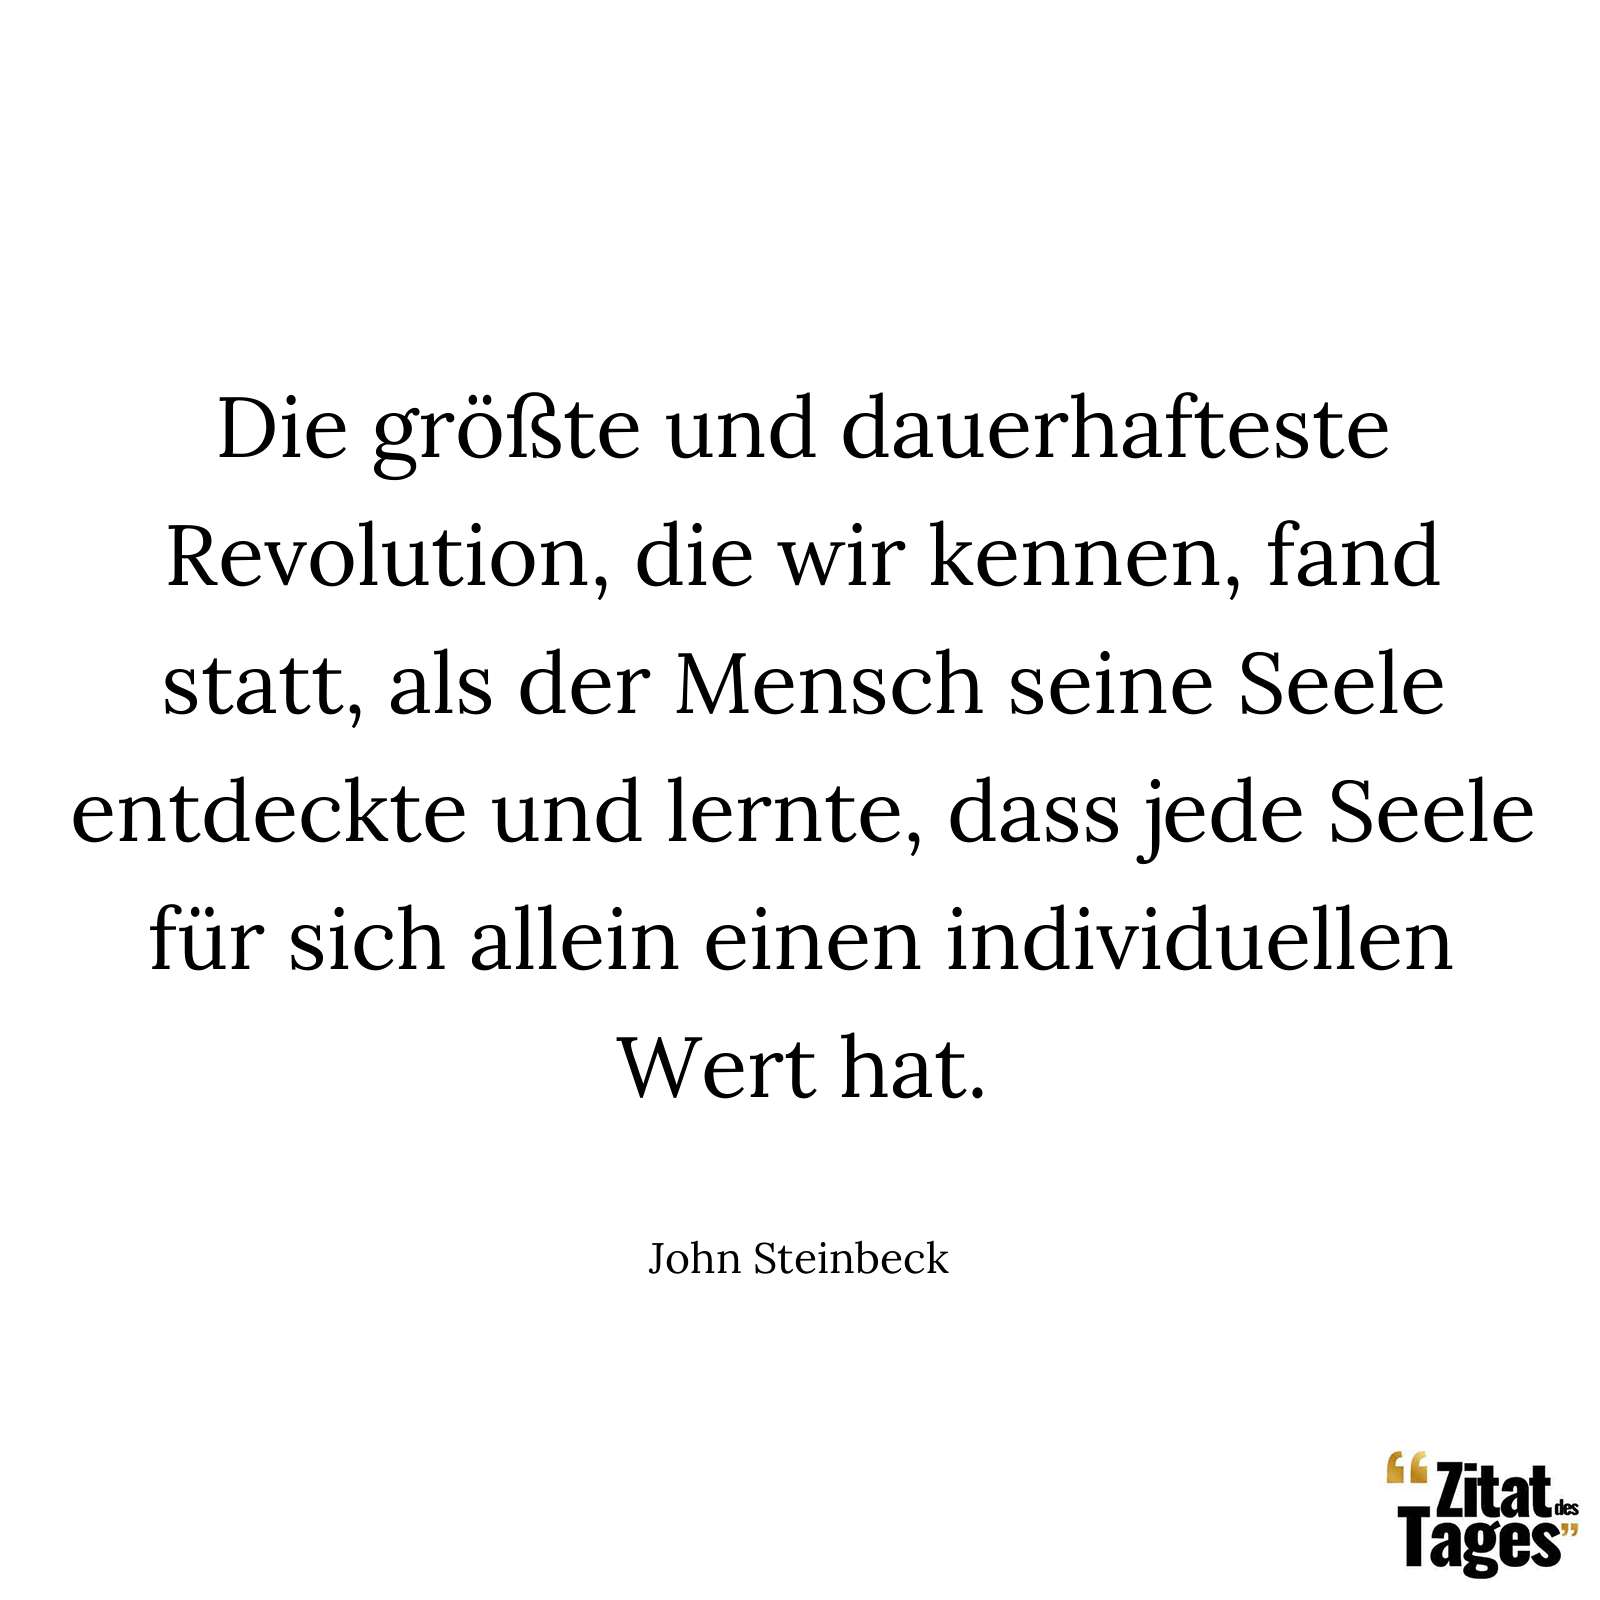 Die größte und dauerhafteste Revolution, die wir kennen, fand statt, als der Mensch seine Seele entdeckte und lernte, dass jede Seele für sich allein einen individuellen Wert hat. - John Steinbeck